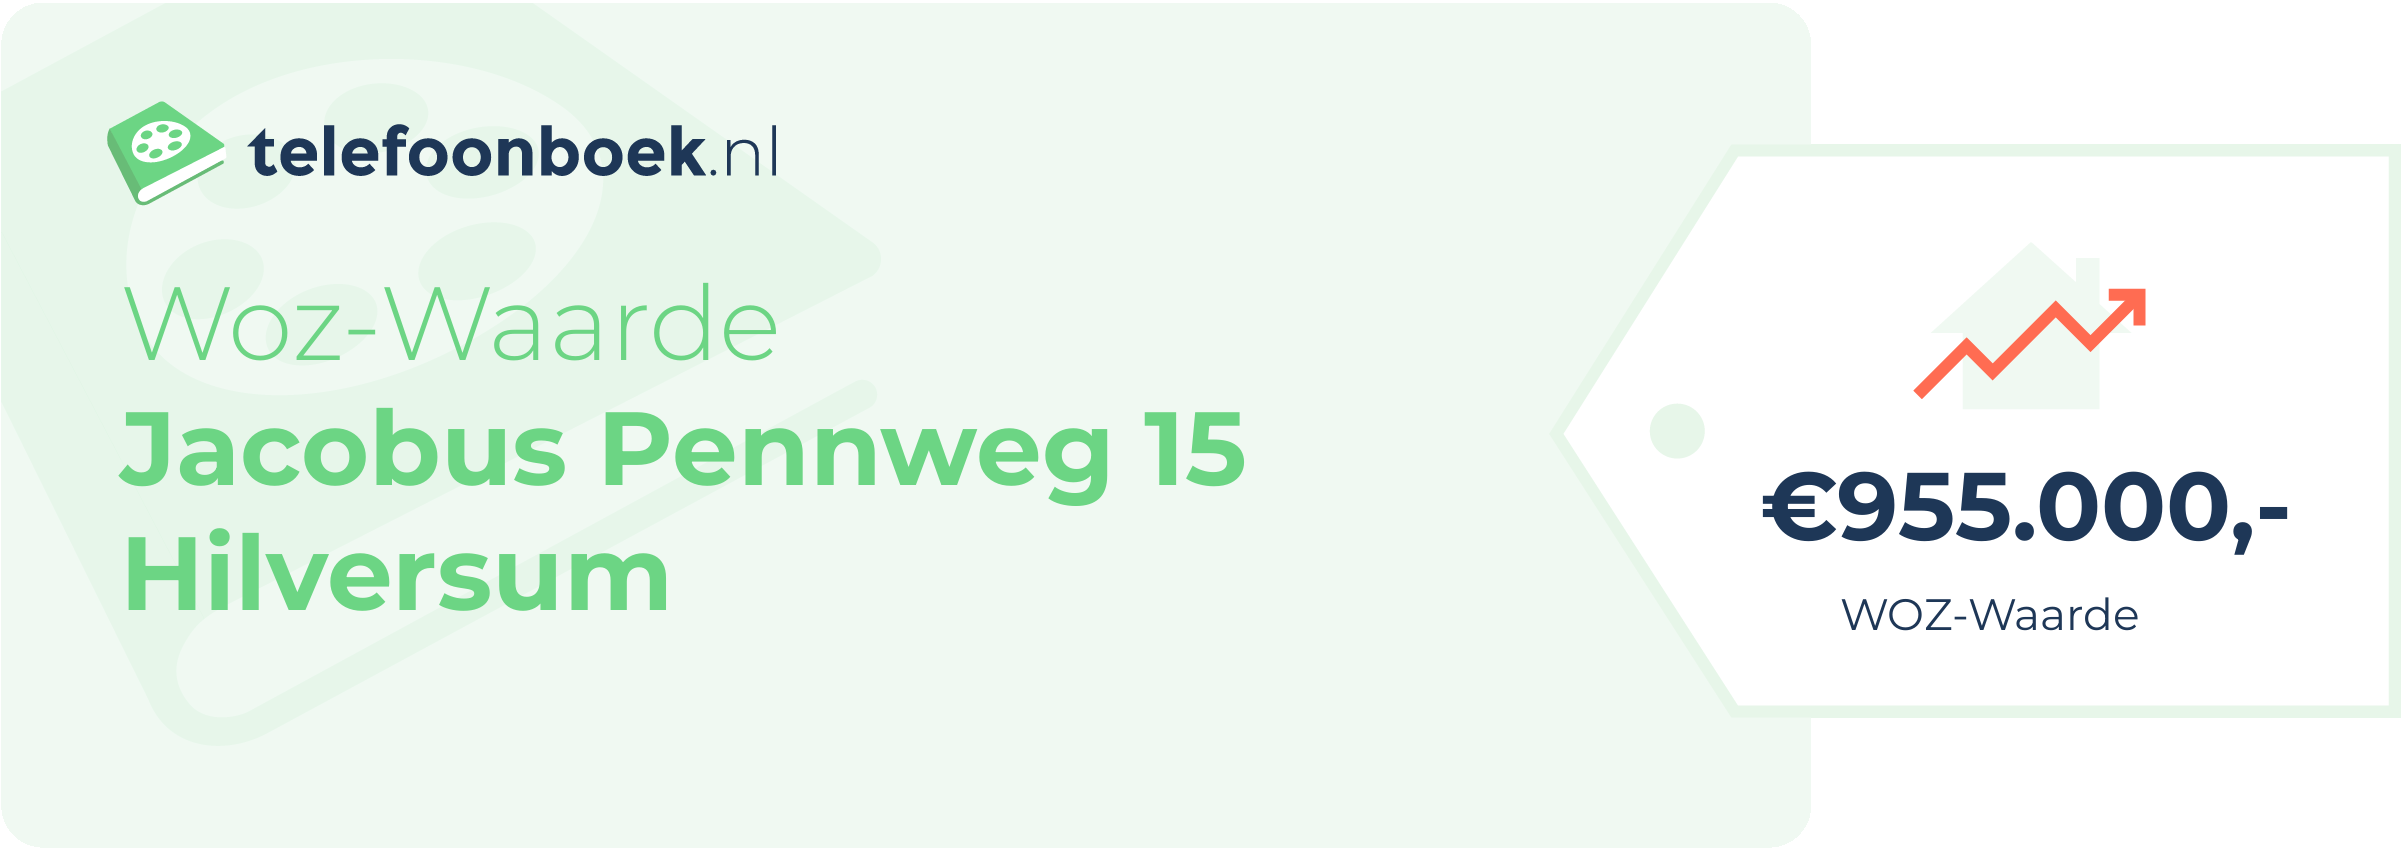 WOZ-waarde Jacobus Pennweg 15 Hilversum